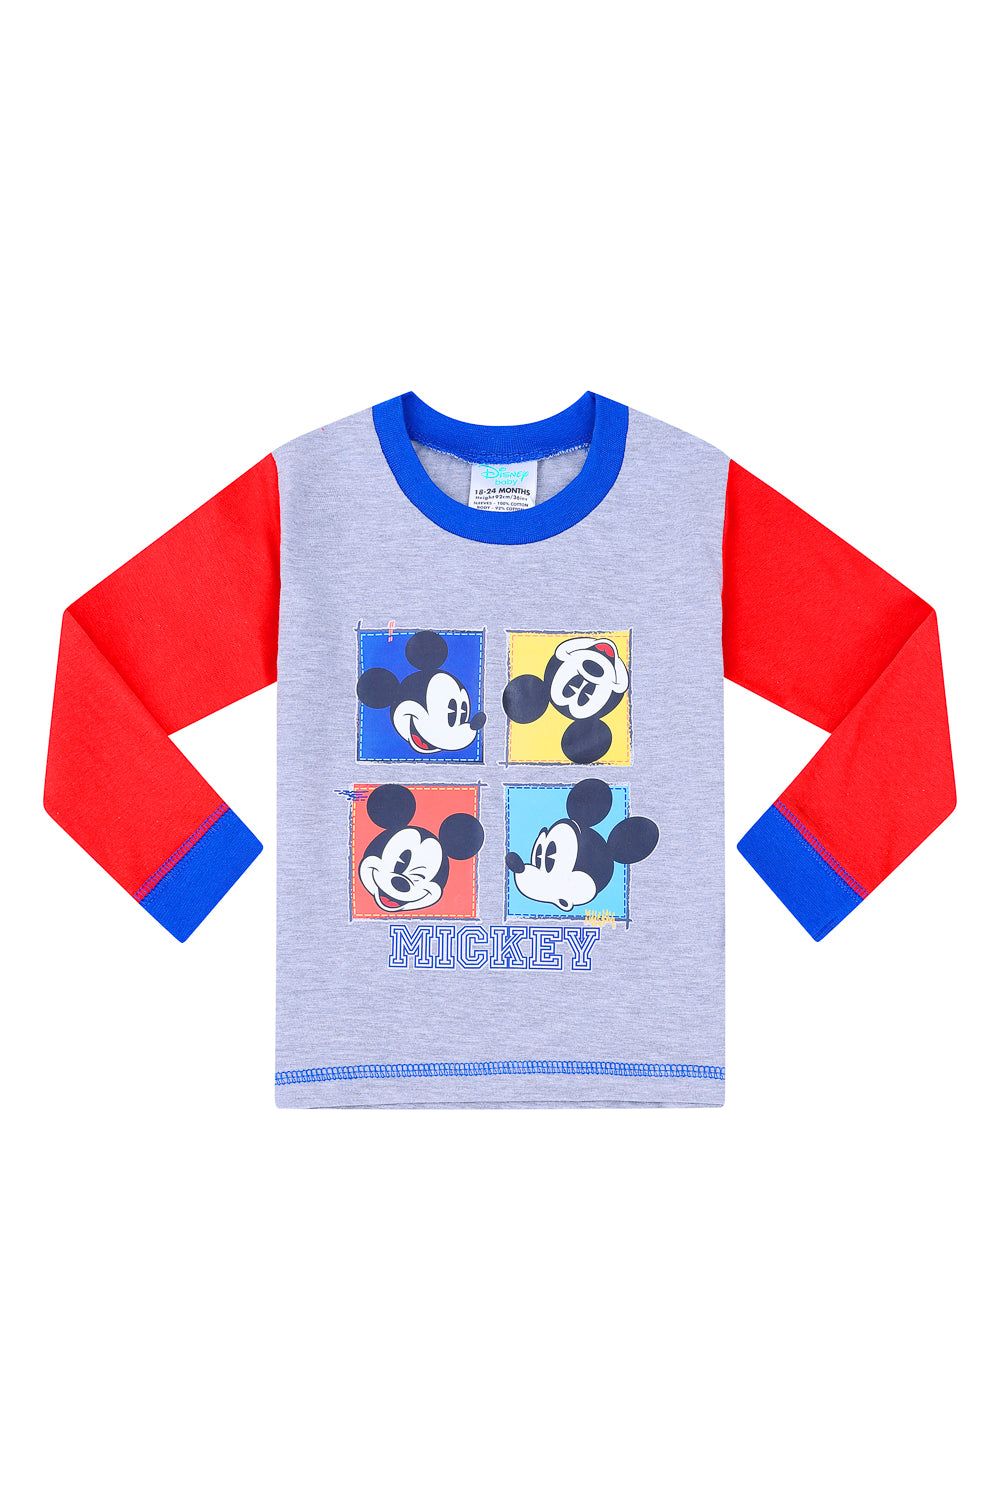 Mickey Mouse Baby Snugglefit Pyjamas - Pyjamas.com